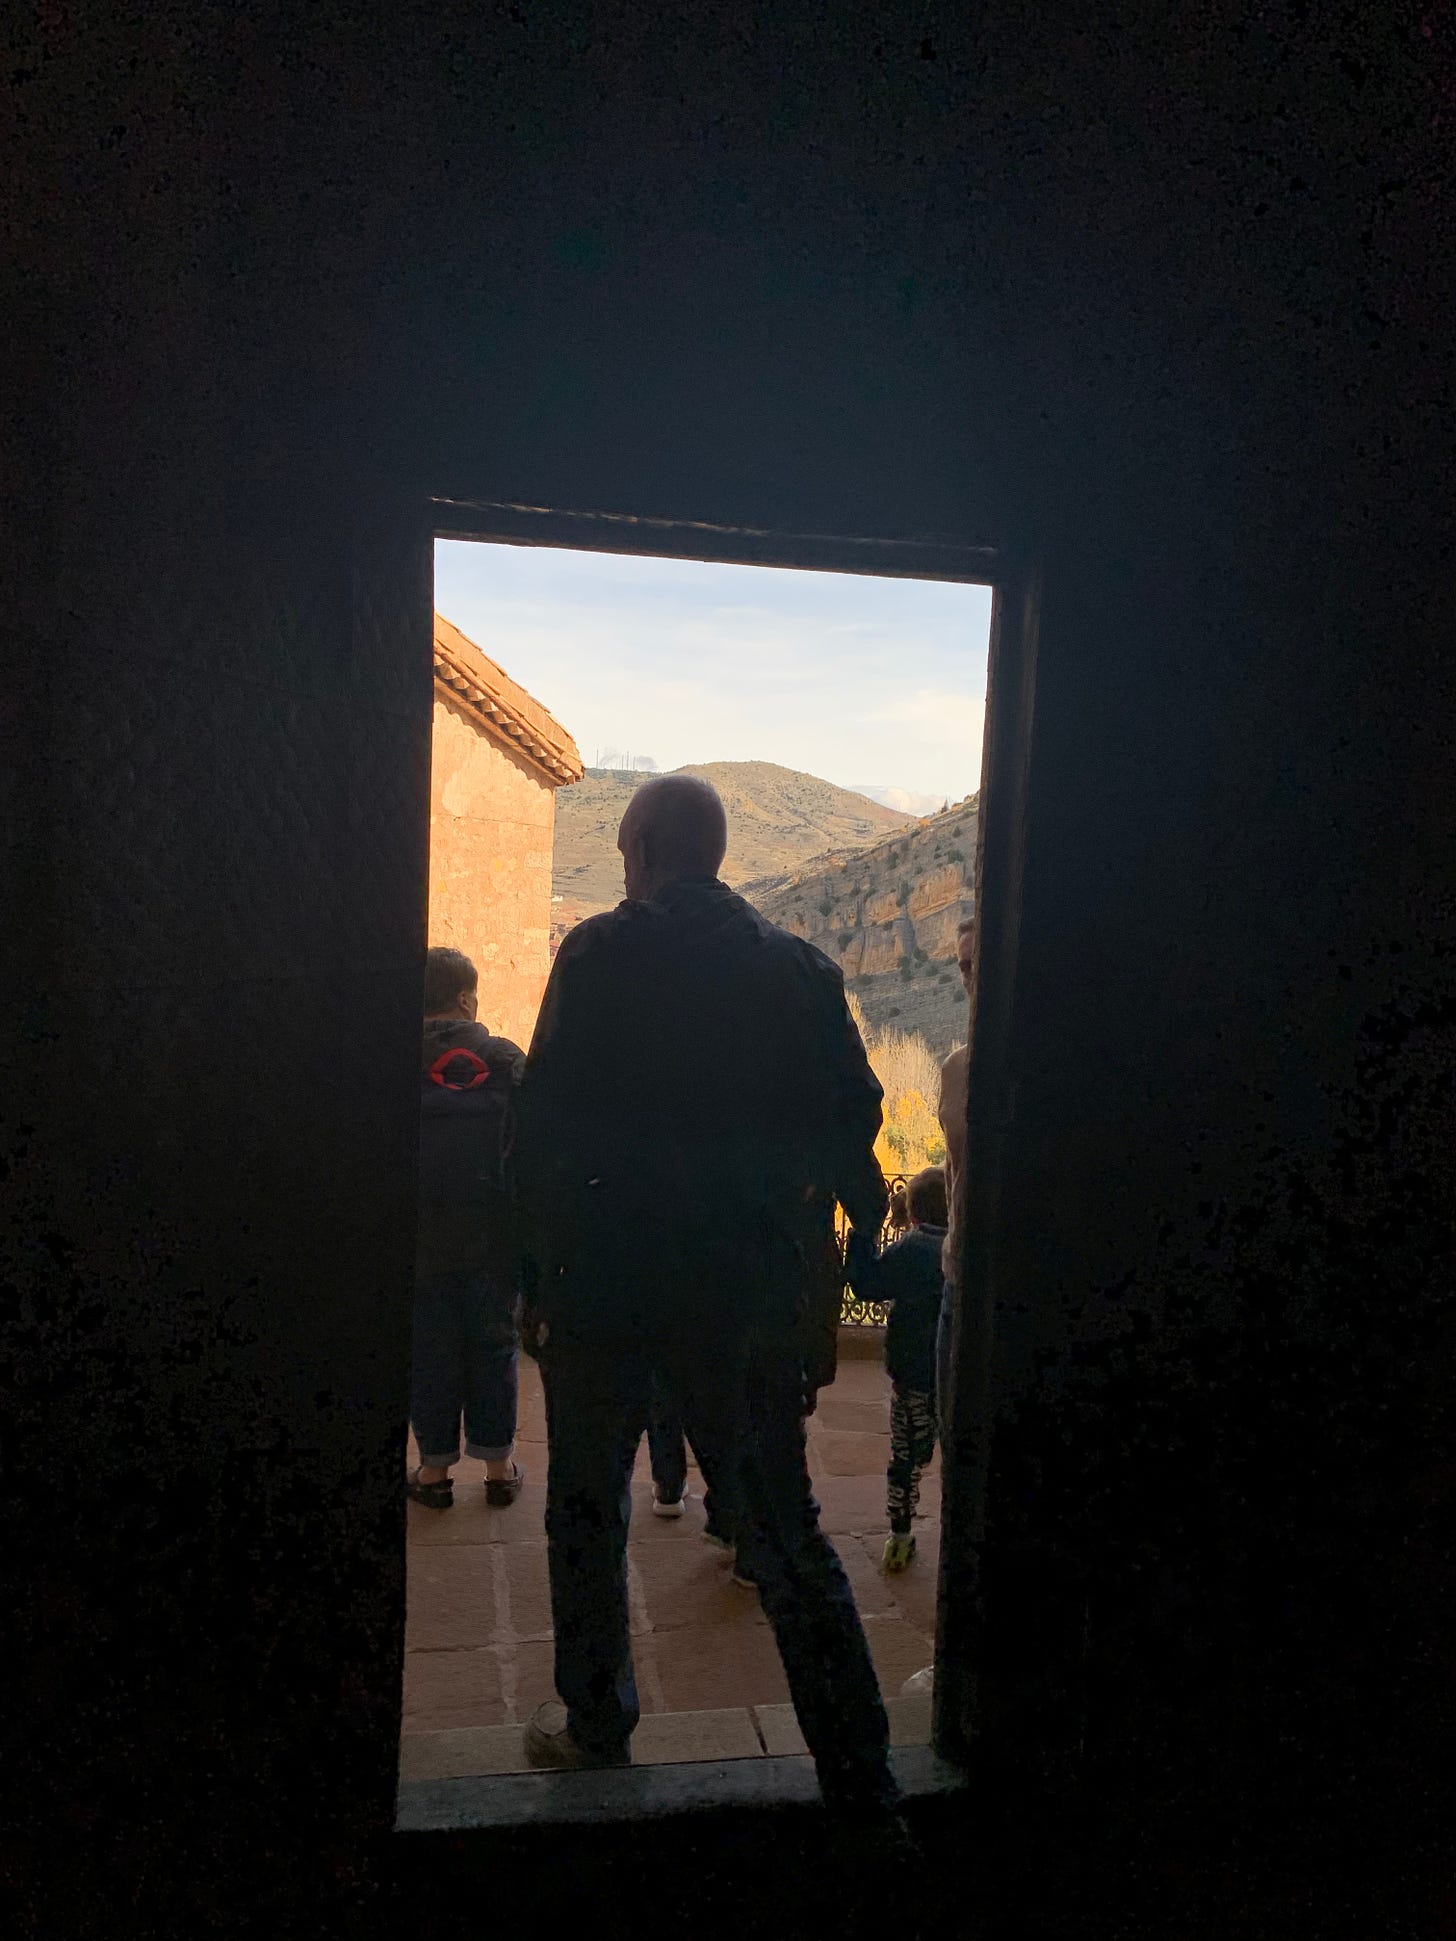 Dark metal doorway shows Jim leaving the cloister.